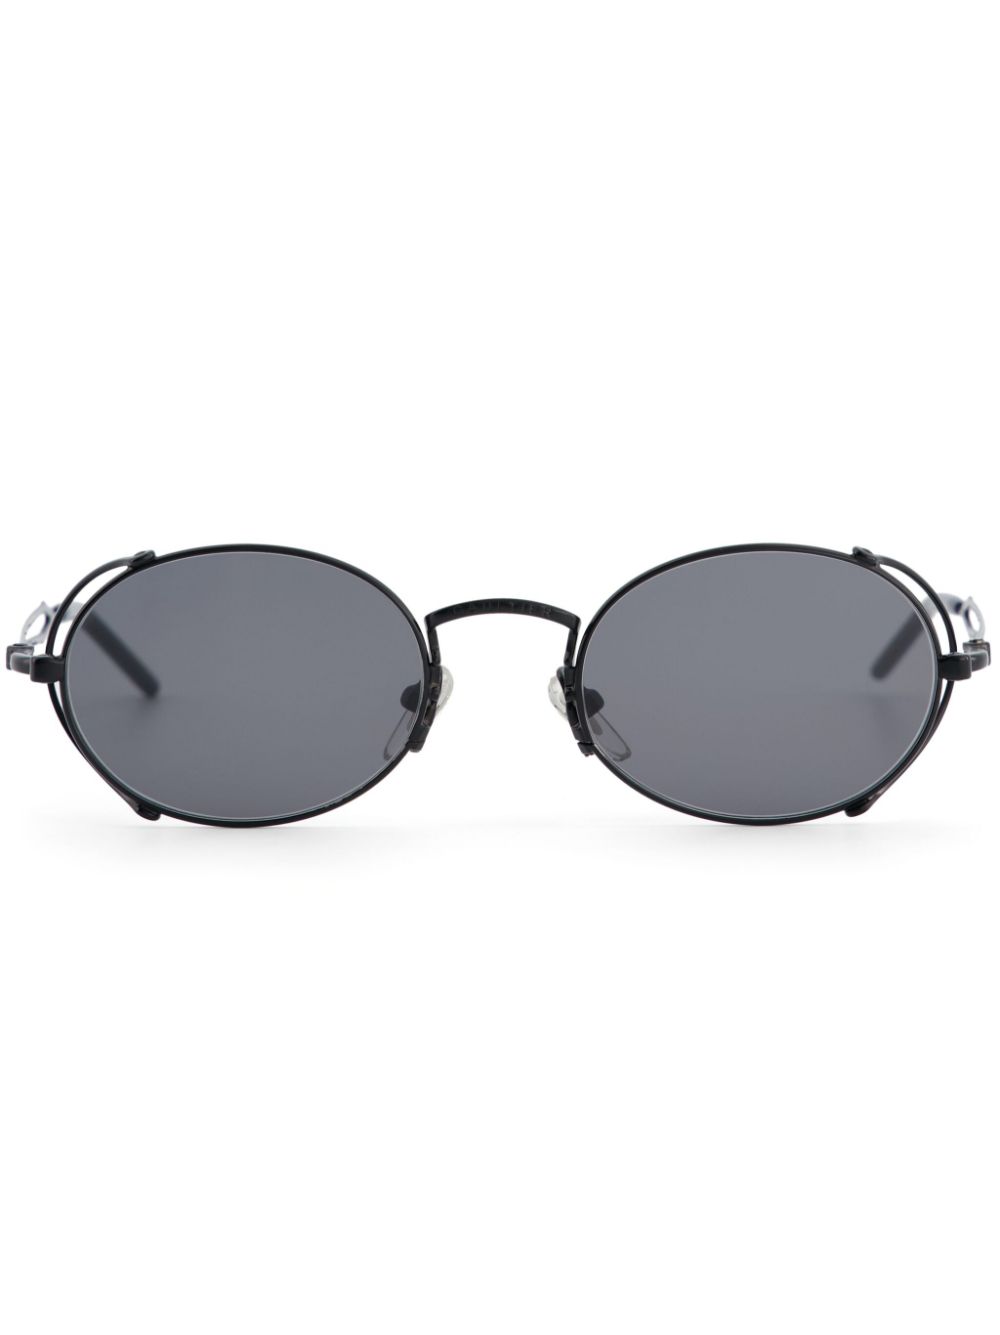 JEAN PAUL GAULTIER UNISEX The 55-3175 Sunglasses Black - MAISONDEFASHION.COM